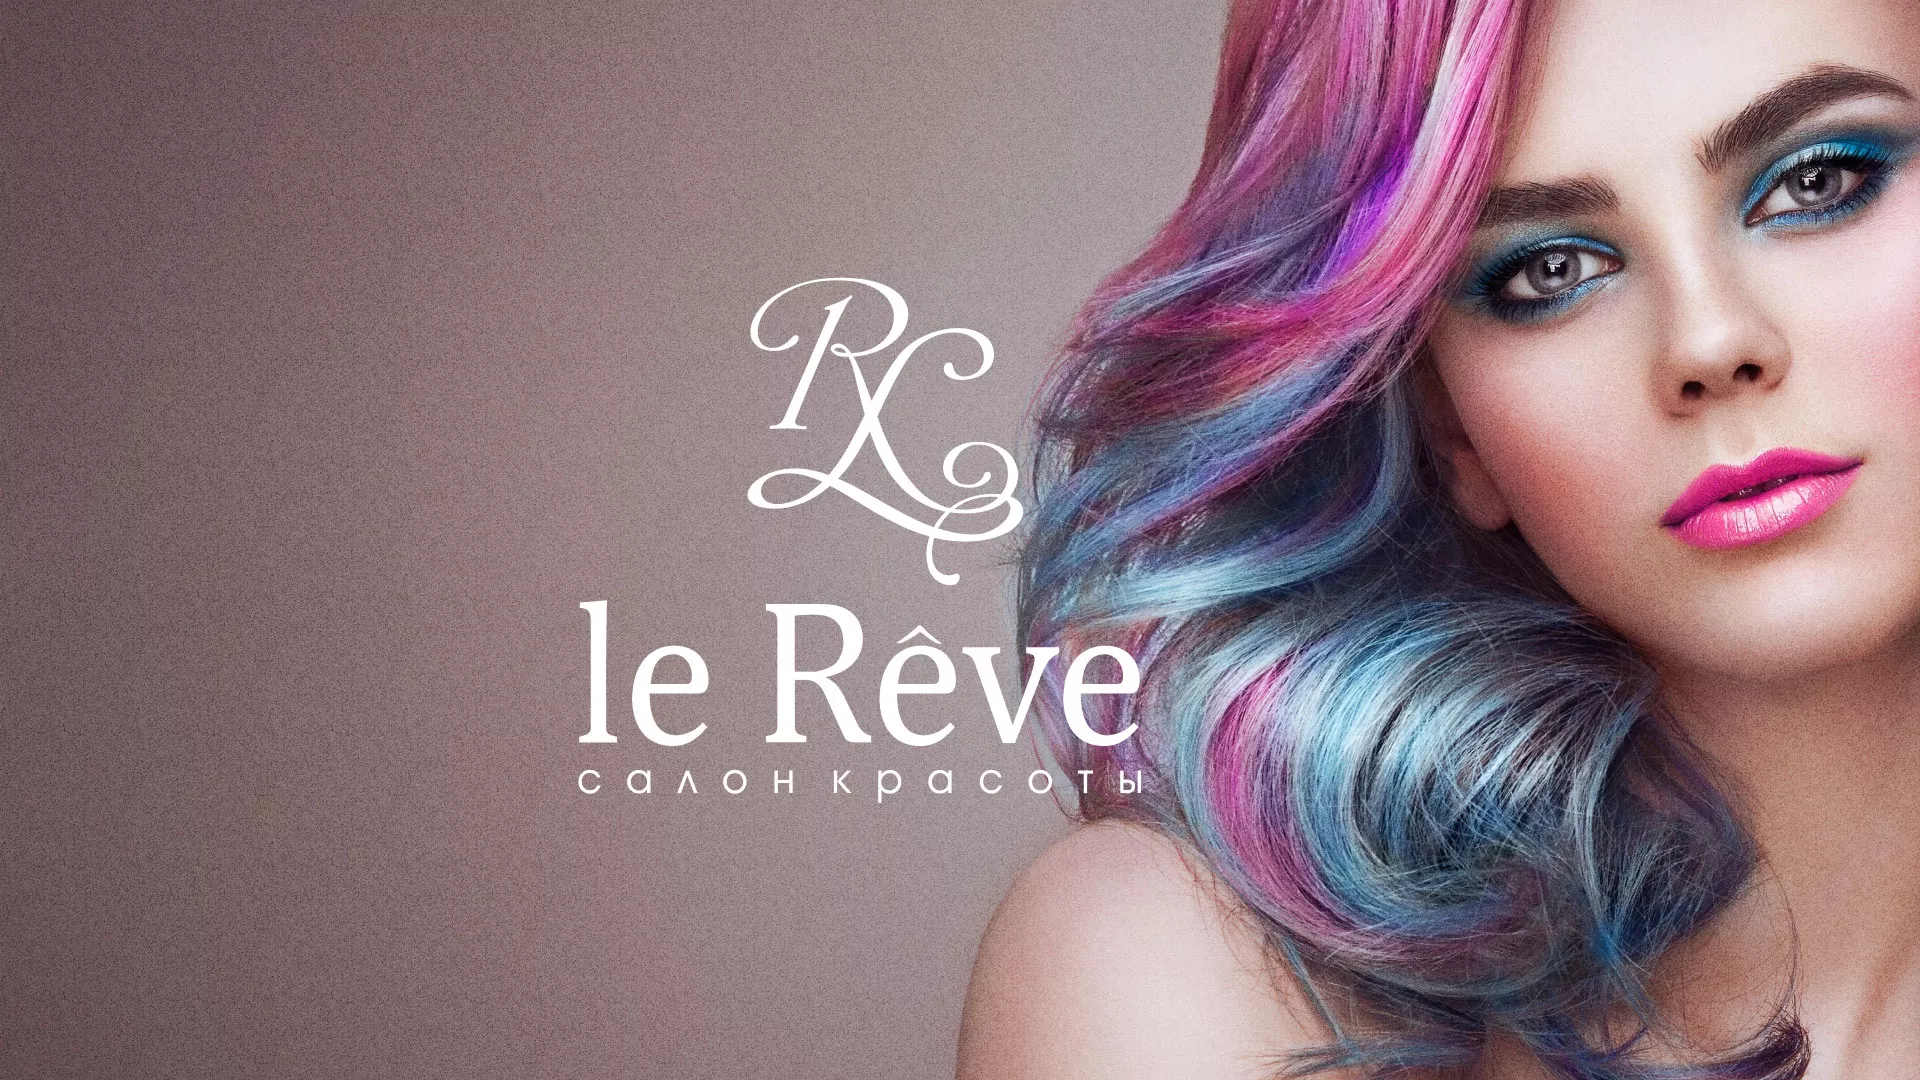 Создание сайта для салона красоты «Le Reve» в Краснокамске